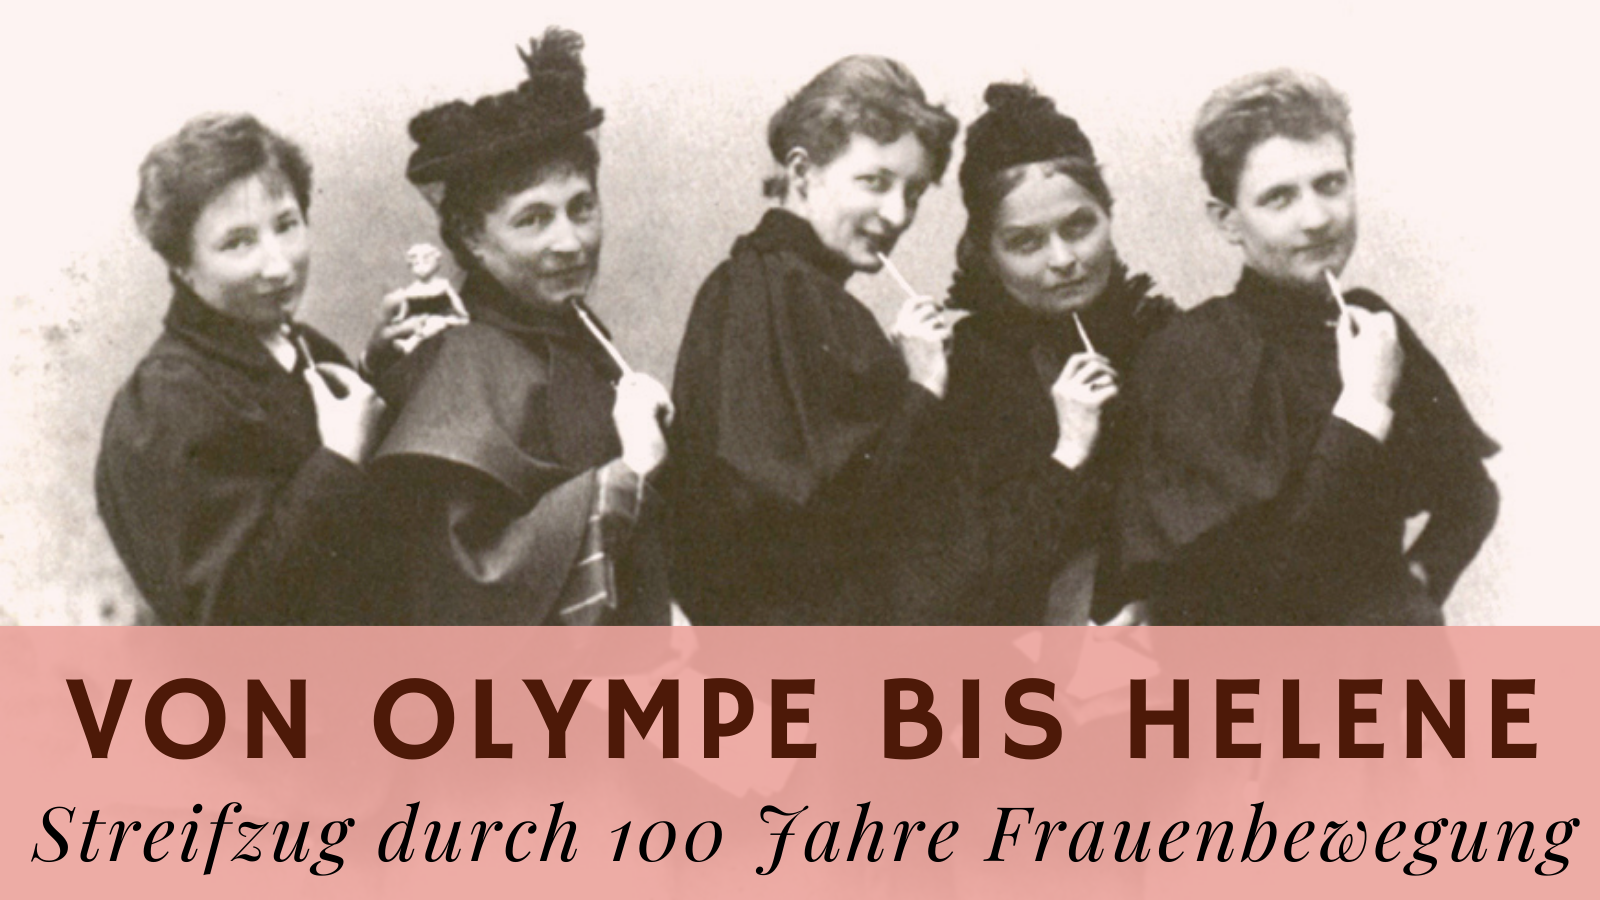 Folge 8: Von Olympe bis Helene: Streifzug durch 100 Jahre Frauenbewegung